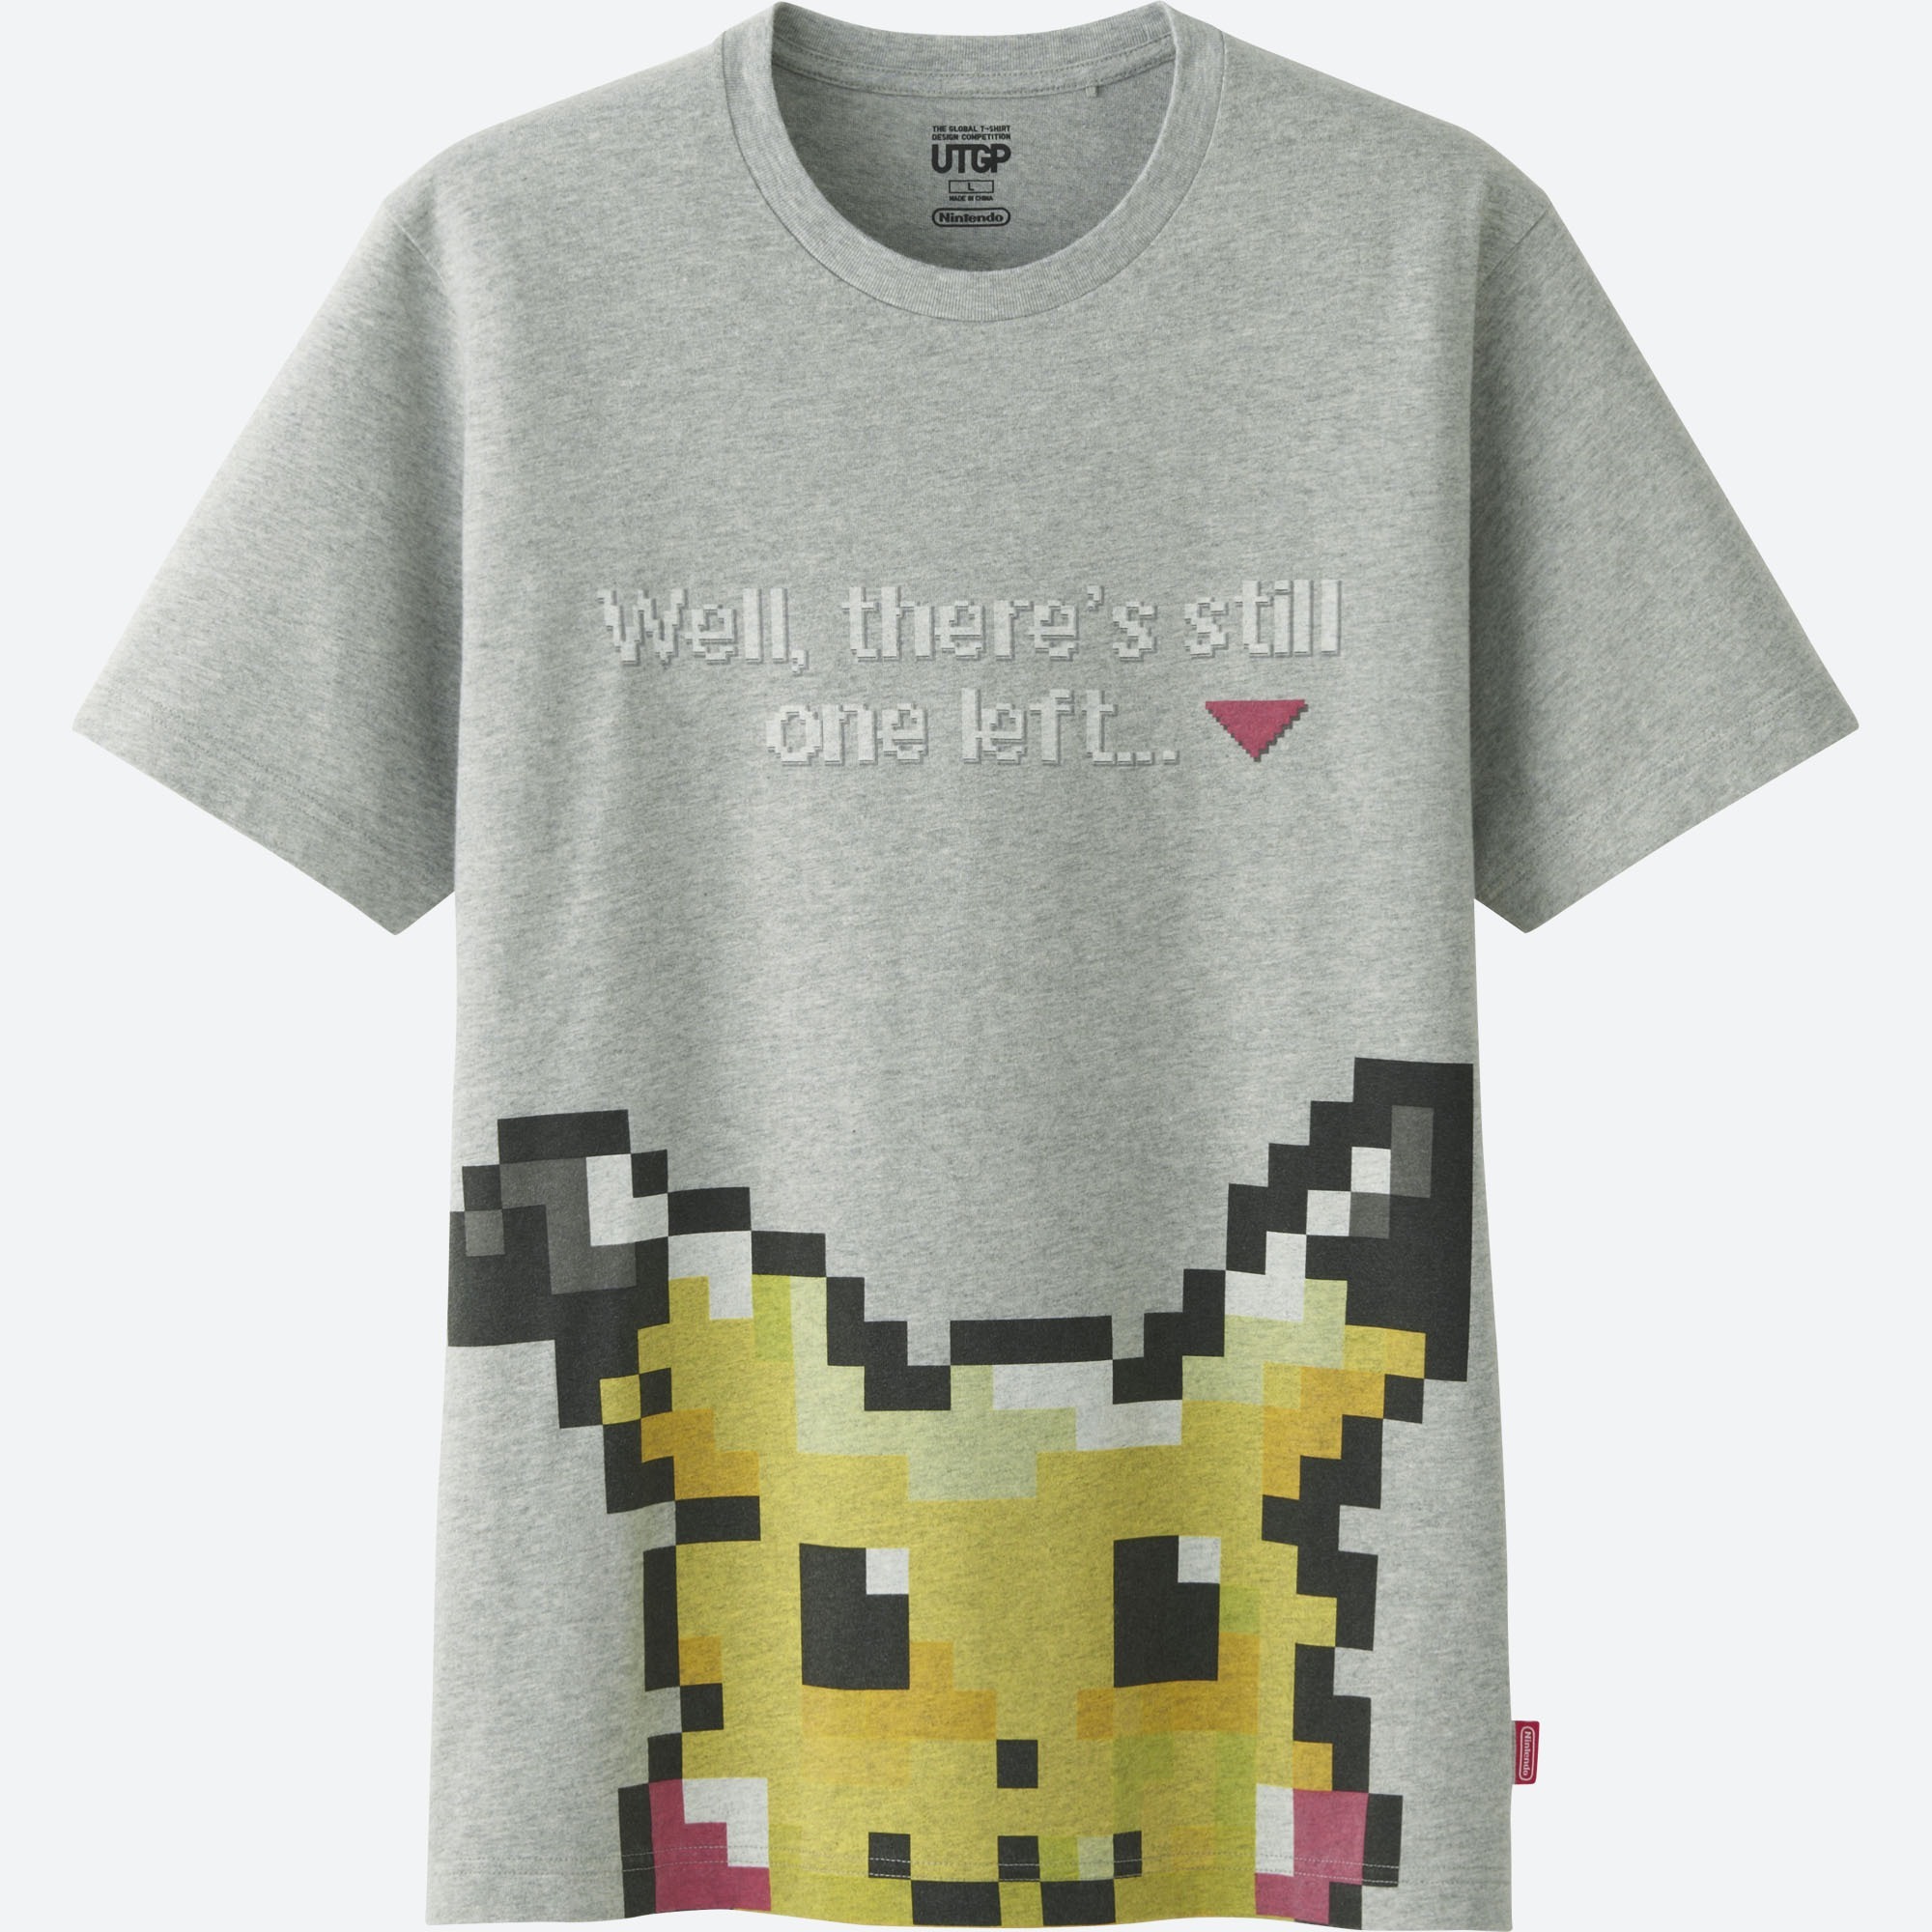 任天堂与优衣库合作推出粉丝设计的t恤